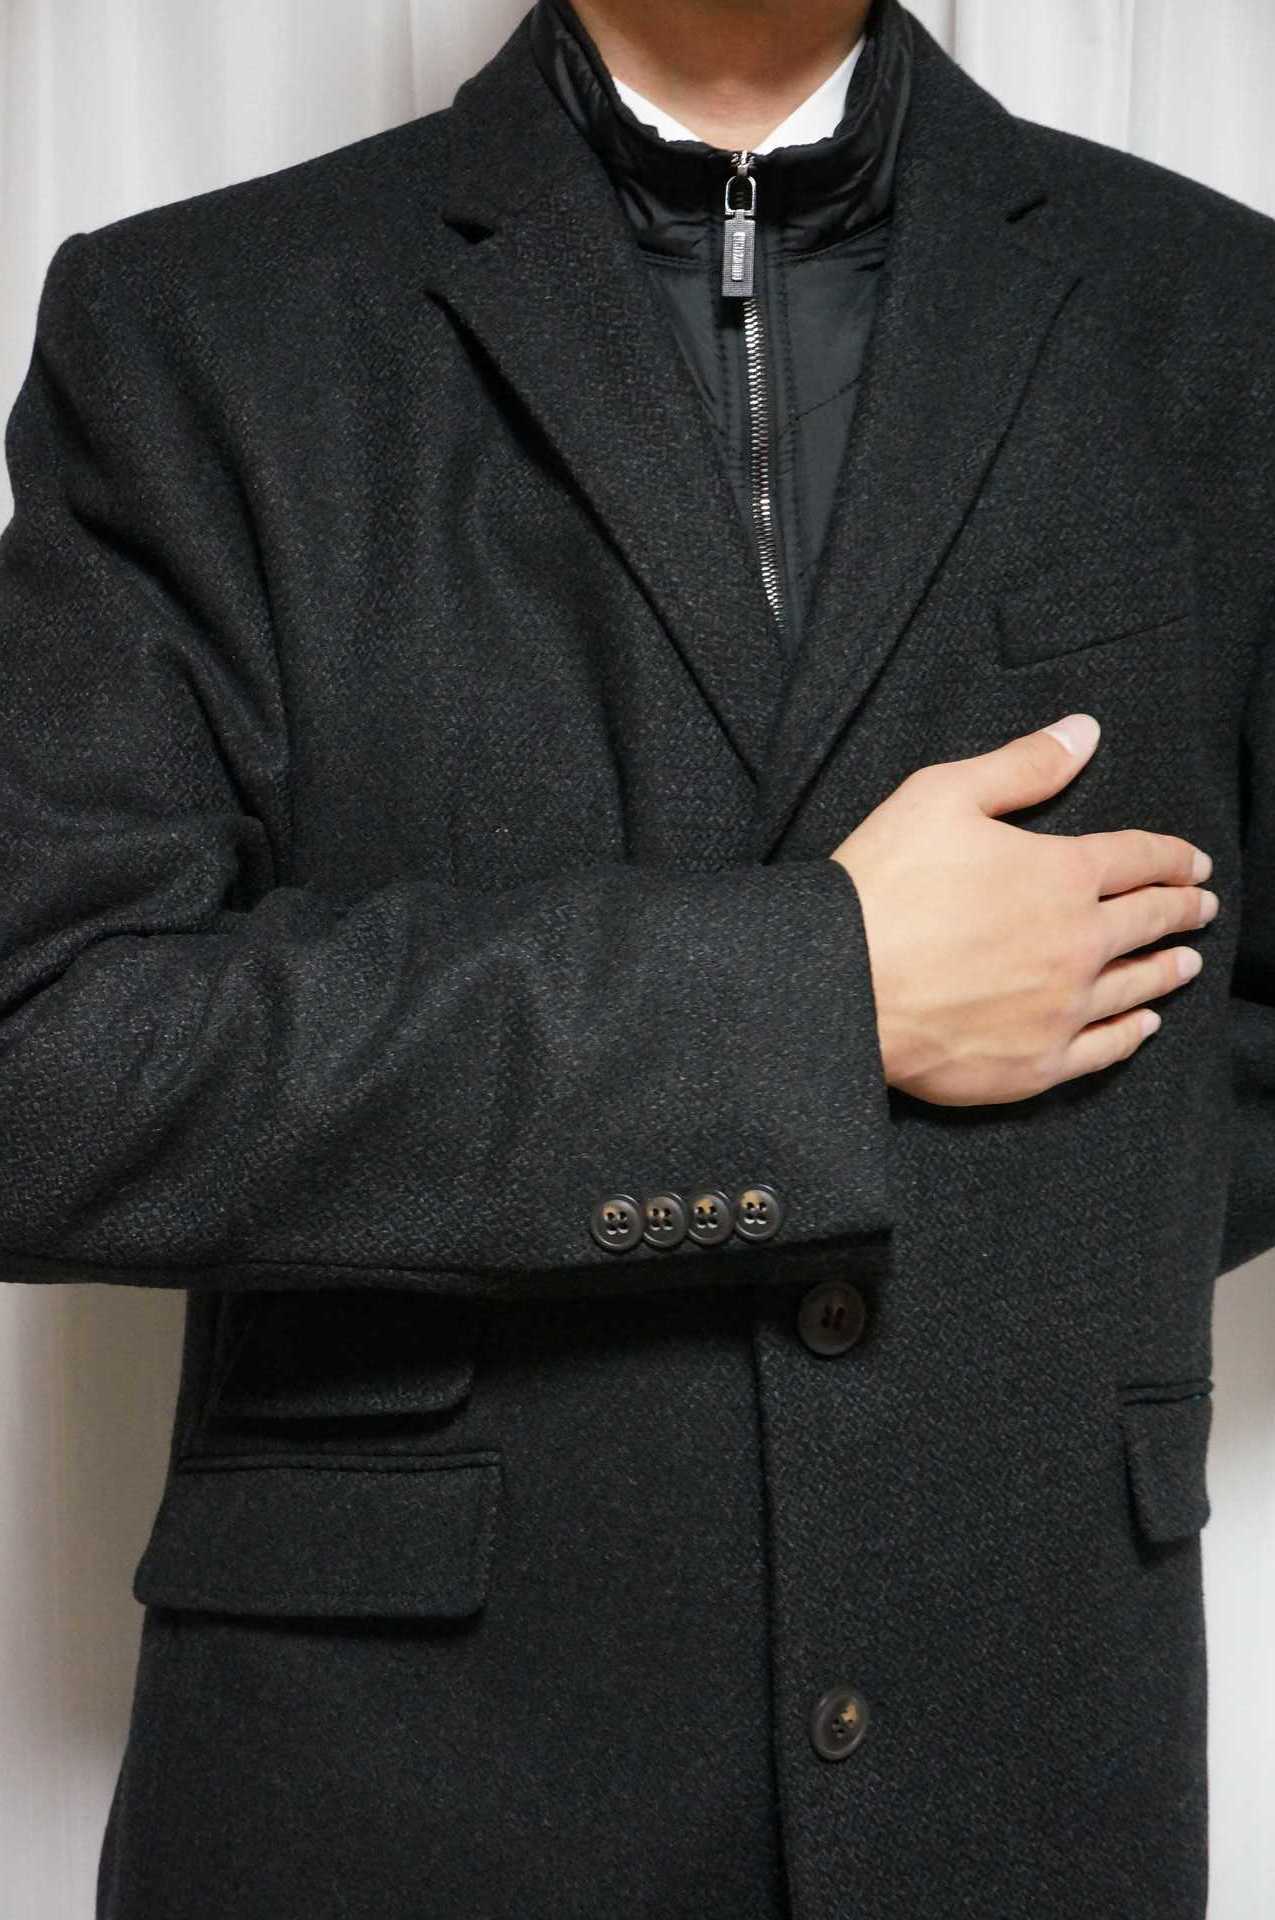 長身スリム用コート: 男性長身細身の方のファッション